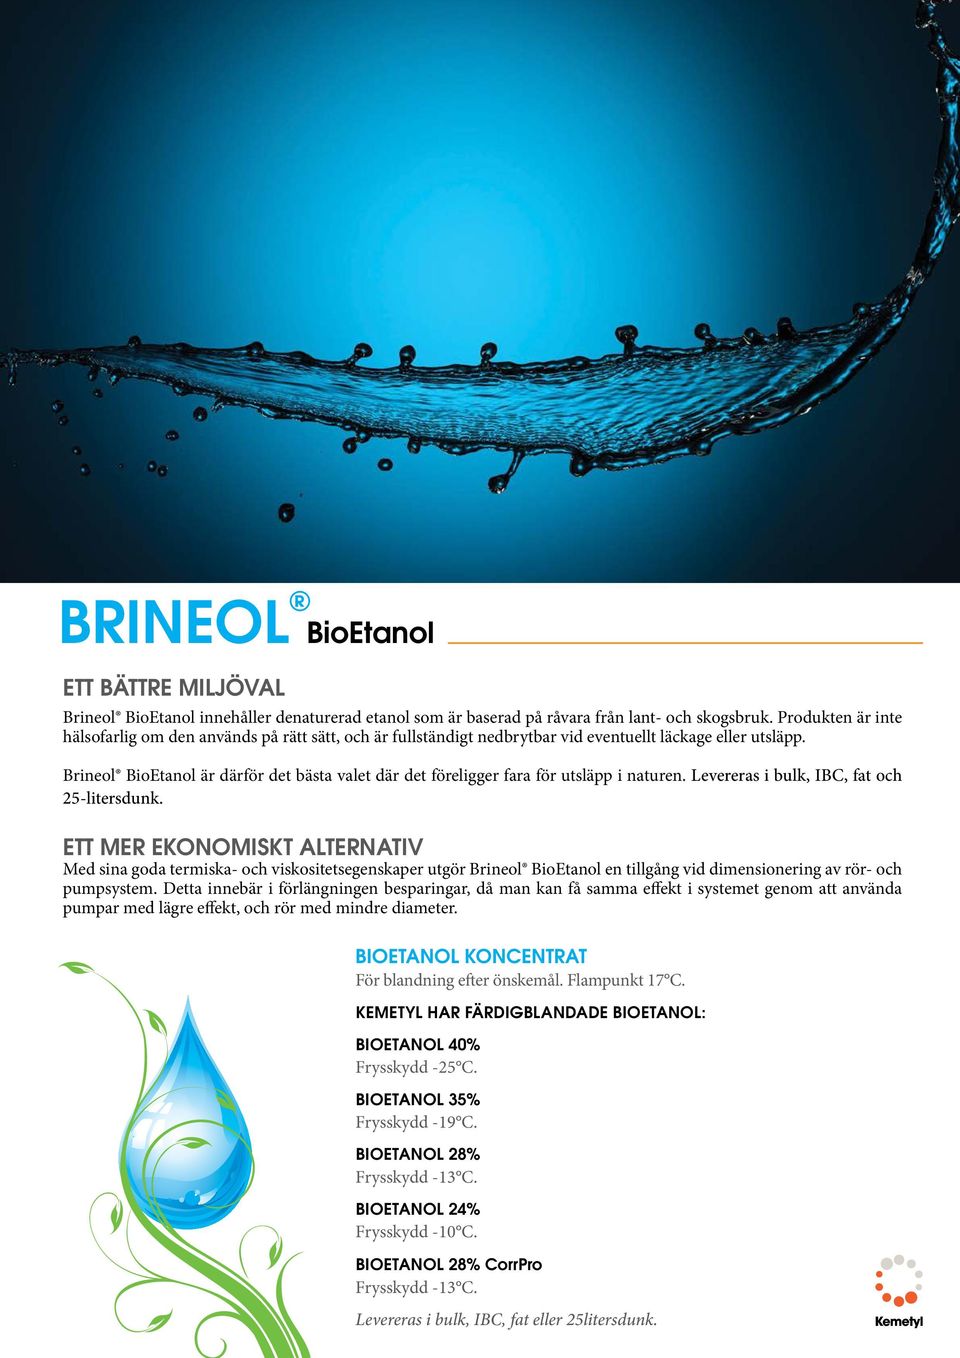 Brineol BioEtanol är därför det bästa valet där det föreligger fara för utsläpp i naturen. Levereras i bulk, IBC, fat och 25-litersdunk.